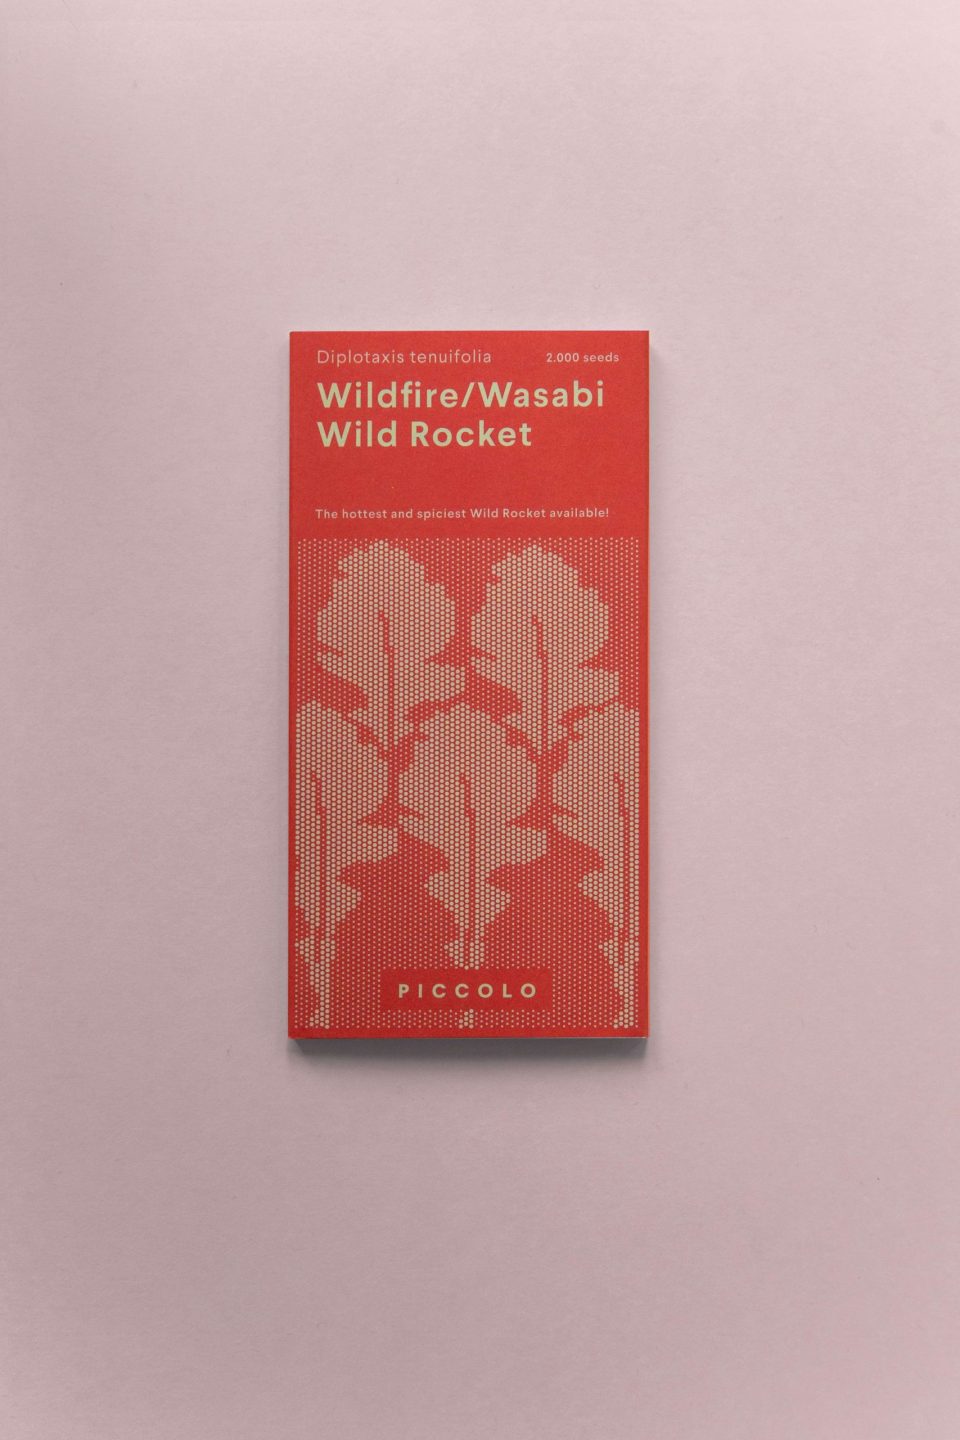 Crvena kutija sjemenki wasabi rukole na rozoj podlozi